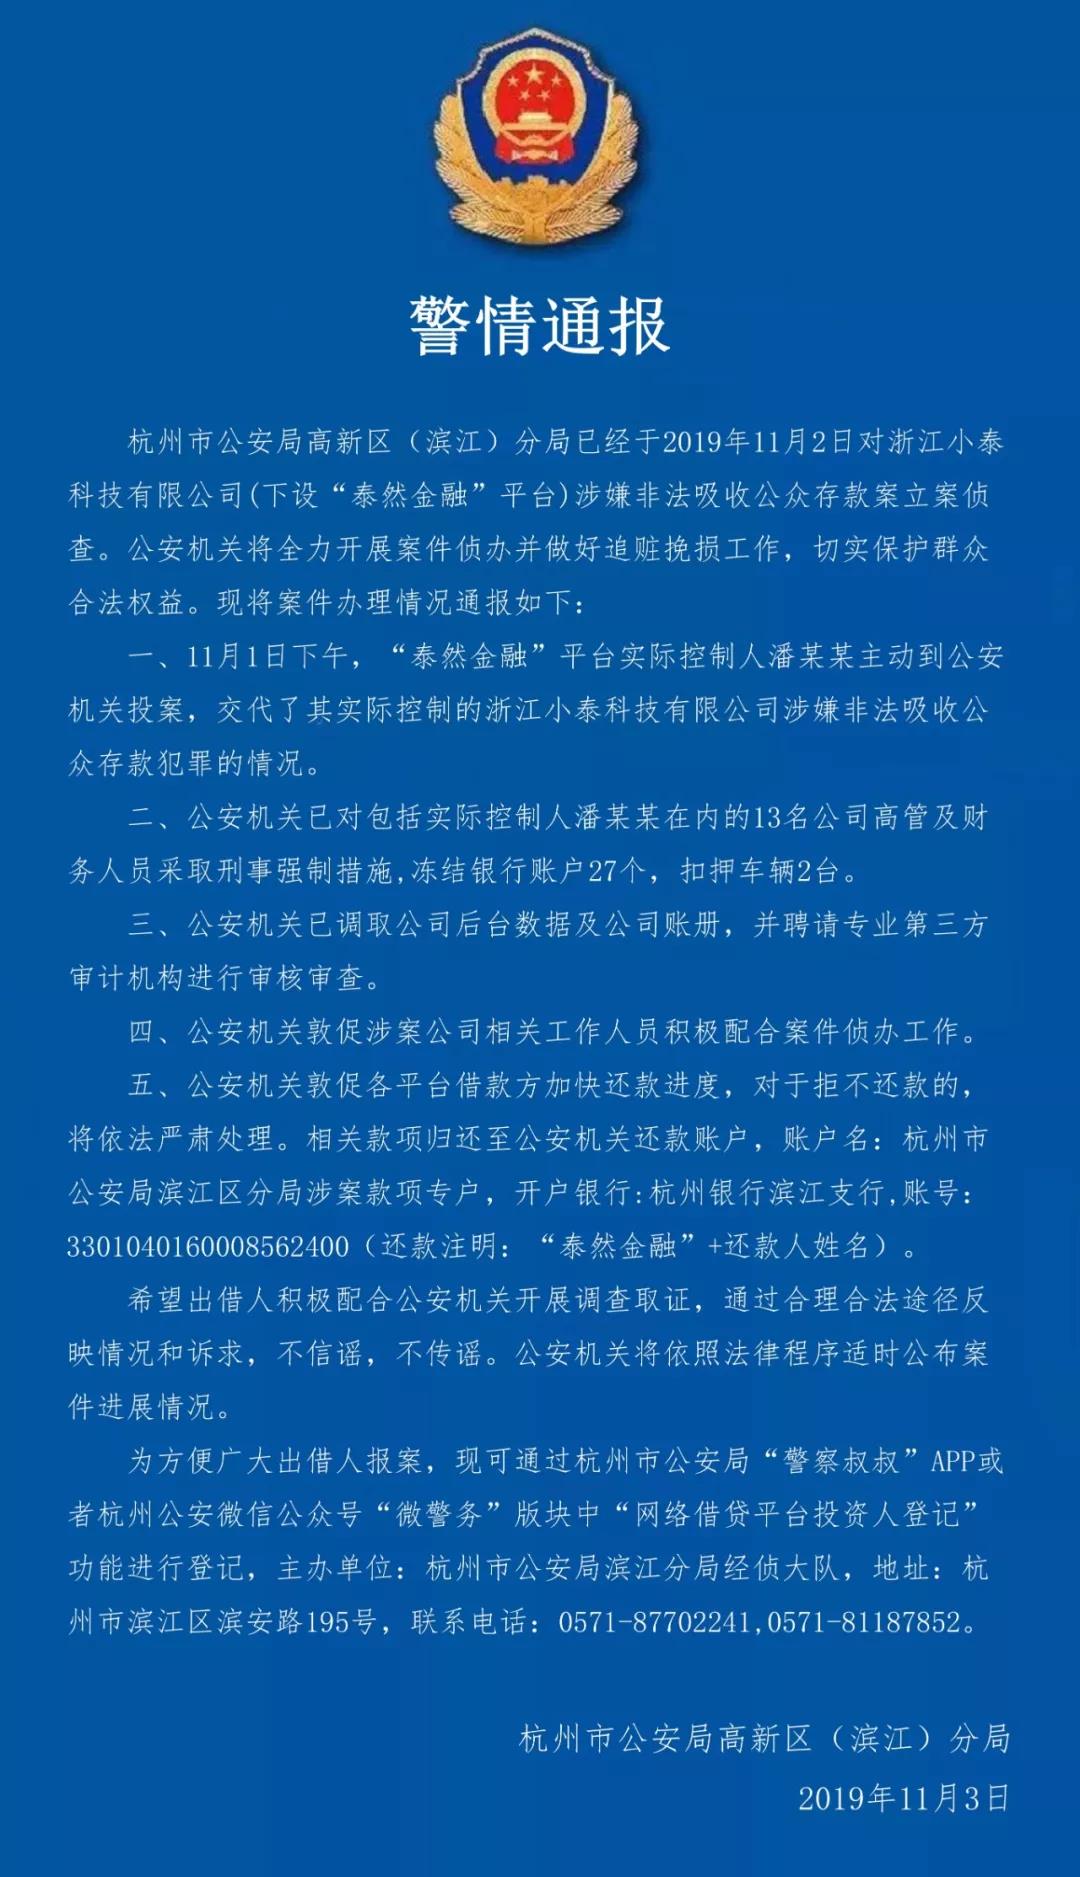 杭州网贷机构泰然金融涉嫌非吸被立案侦查，实控人主动投案